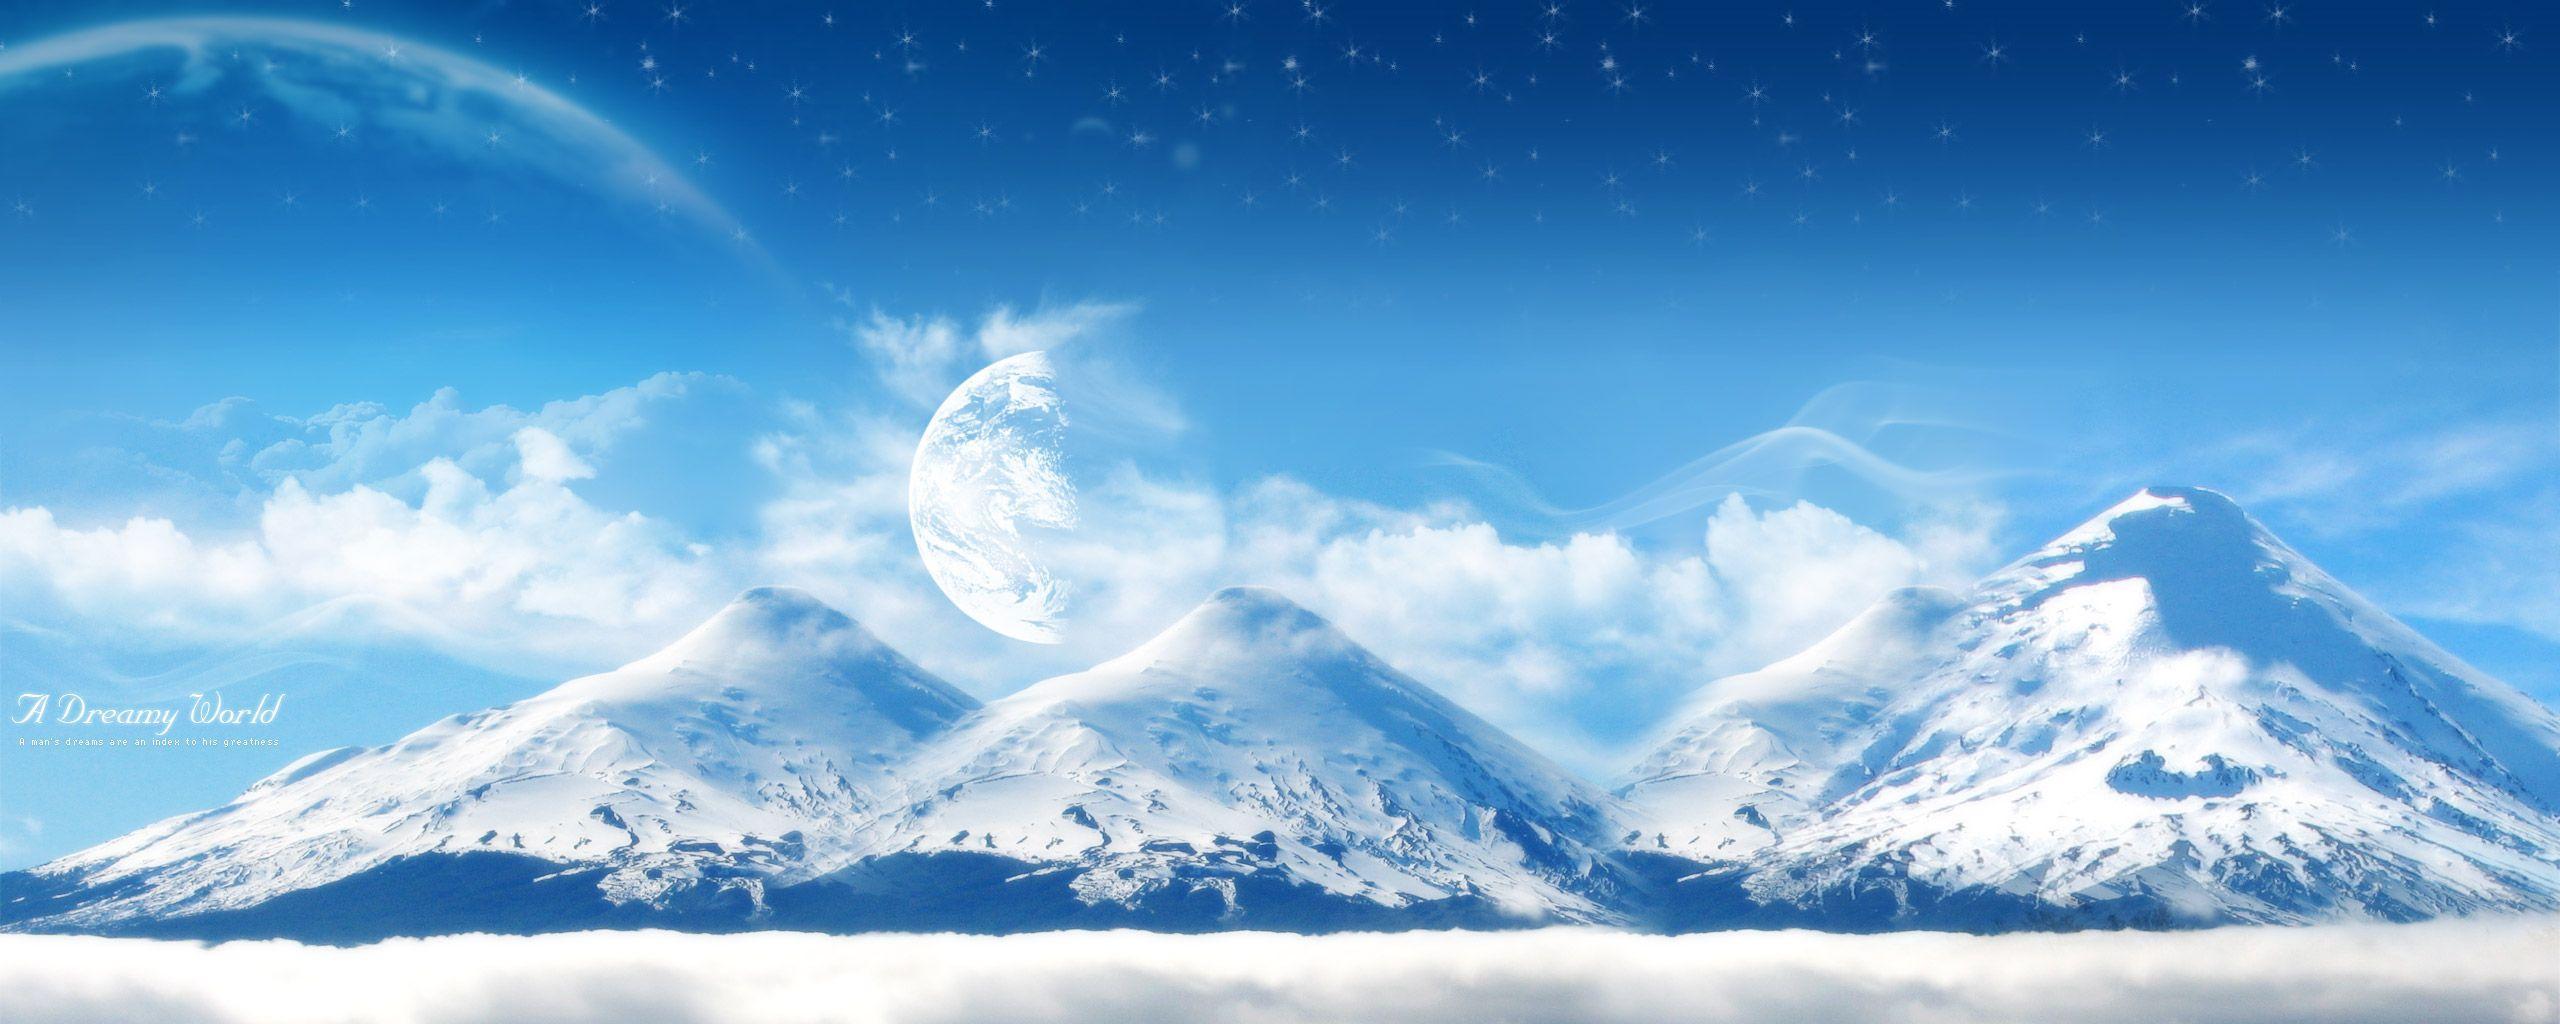 Anime Mountain Wallpaper Free Anime Mountain Background